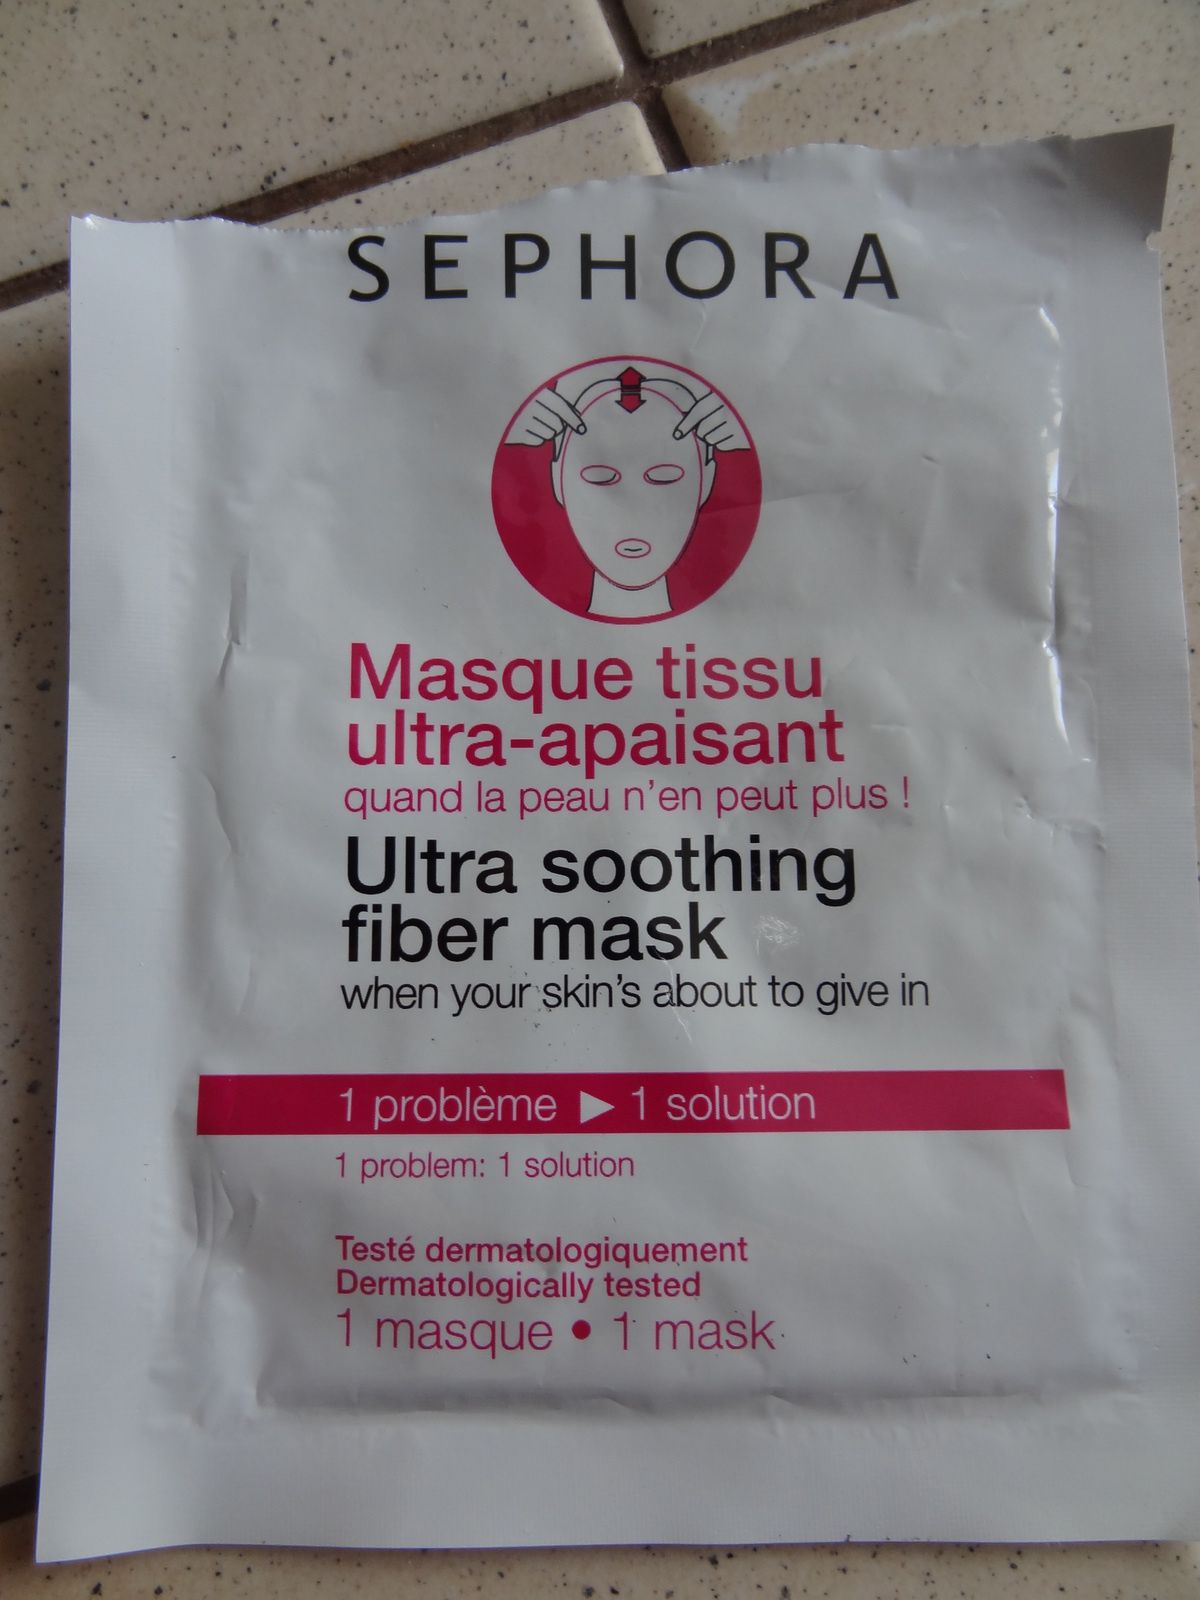 Masque tissu ultra-apaisant Sephora